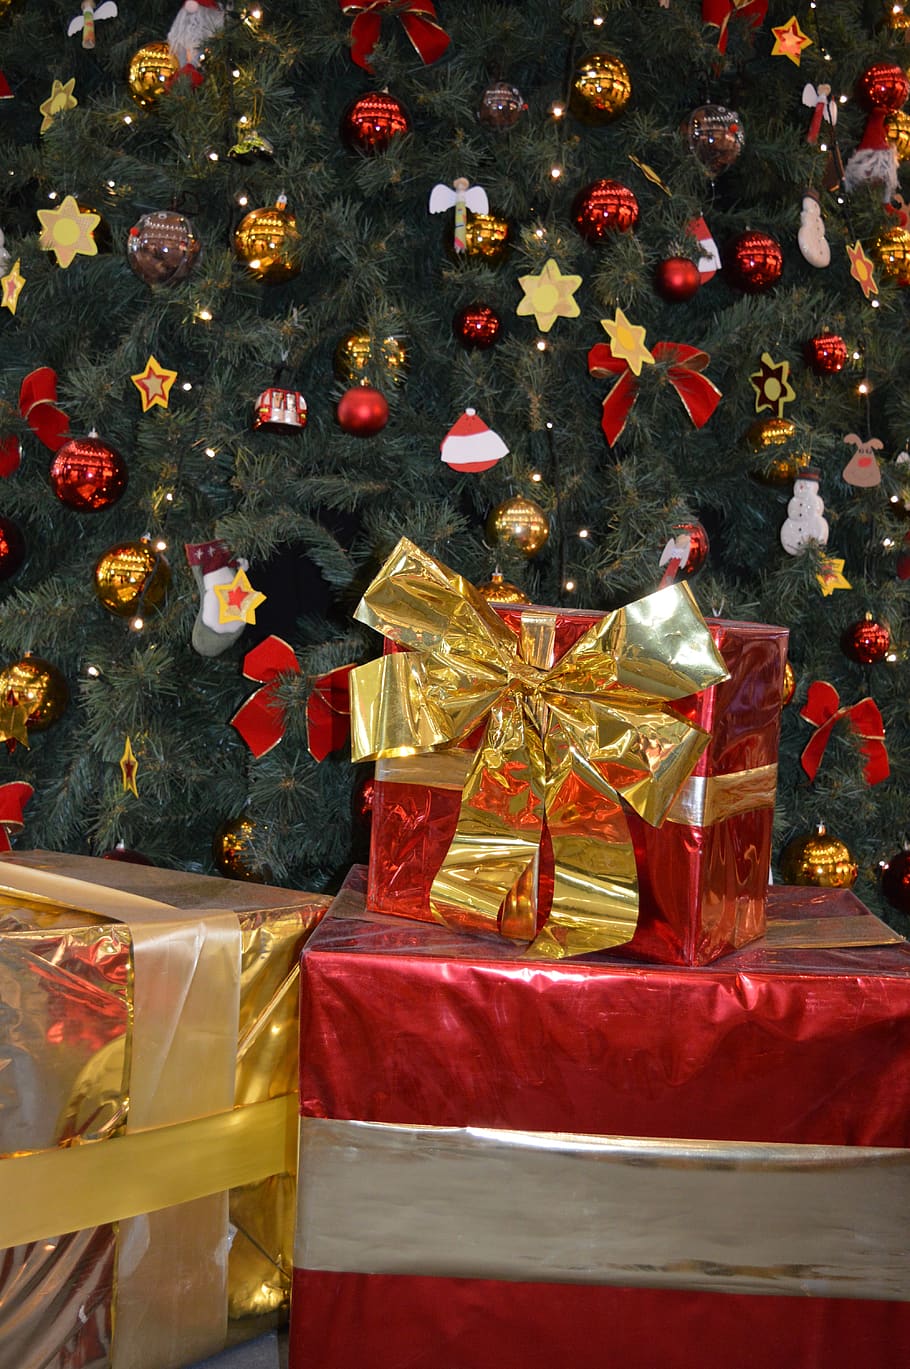 natal, pohon natal, dekorasi, hari libur umum, desember, bola natal, kado, hadiah, busur, merah